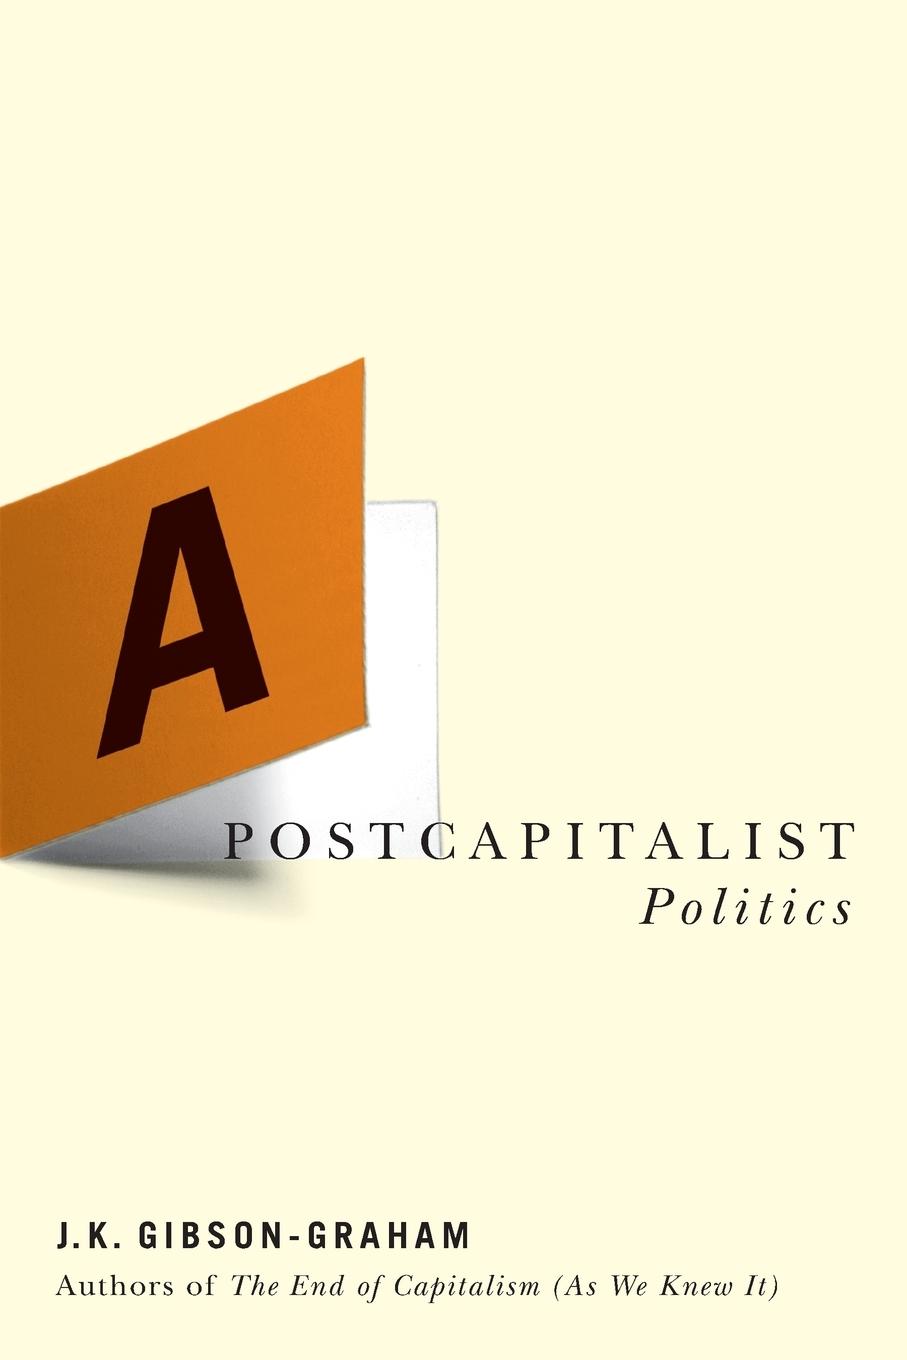 A Postcapitalist Politics / J. K. Gibson-Graham / Taschenbuch / Paperback / Kartoniert / Broschiert / Englisch / 2006 / University of Minnesota Press / EAN 9780816648047 - Gibson-Graham, J. K.